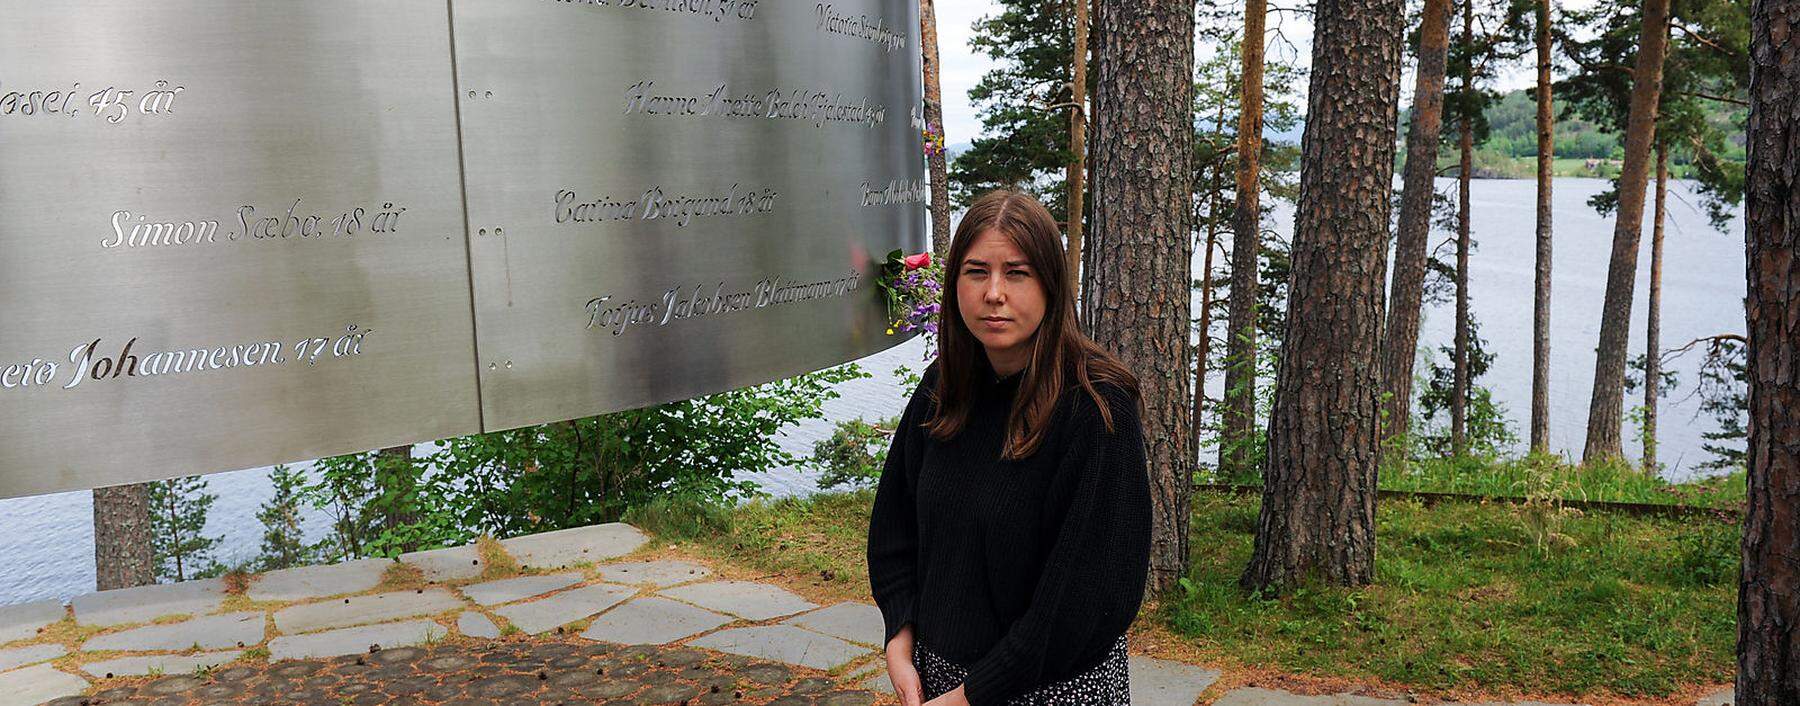 Eine Überlebende des Attentats vor einer Gedenktafel für die Ermordeten.